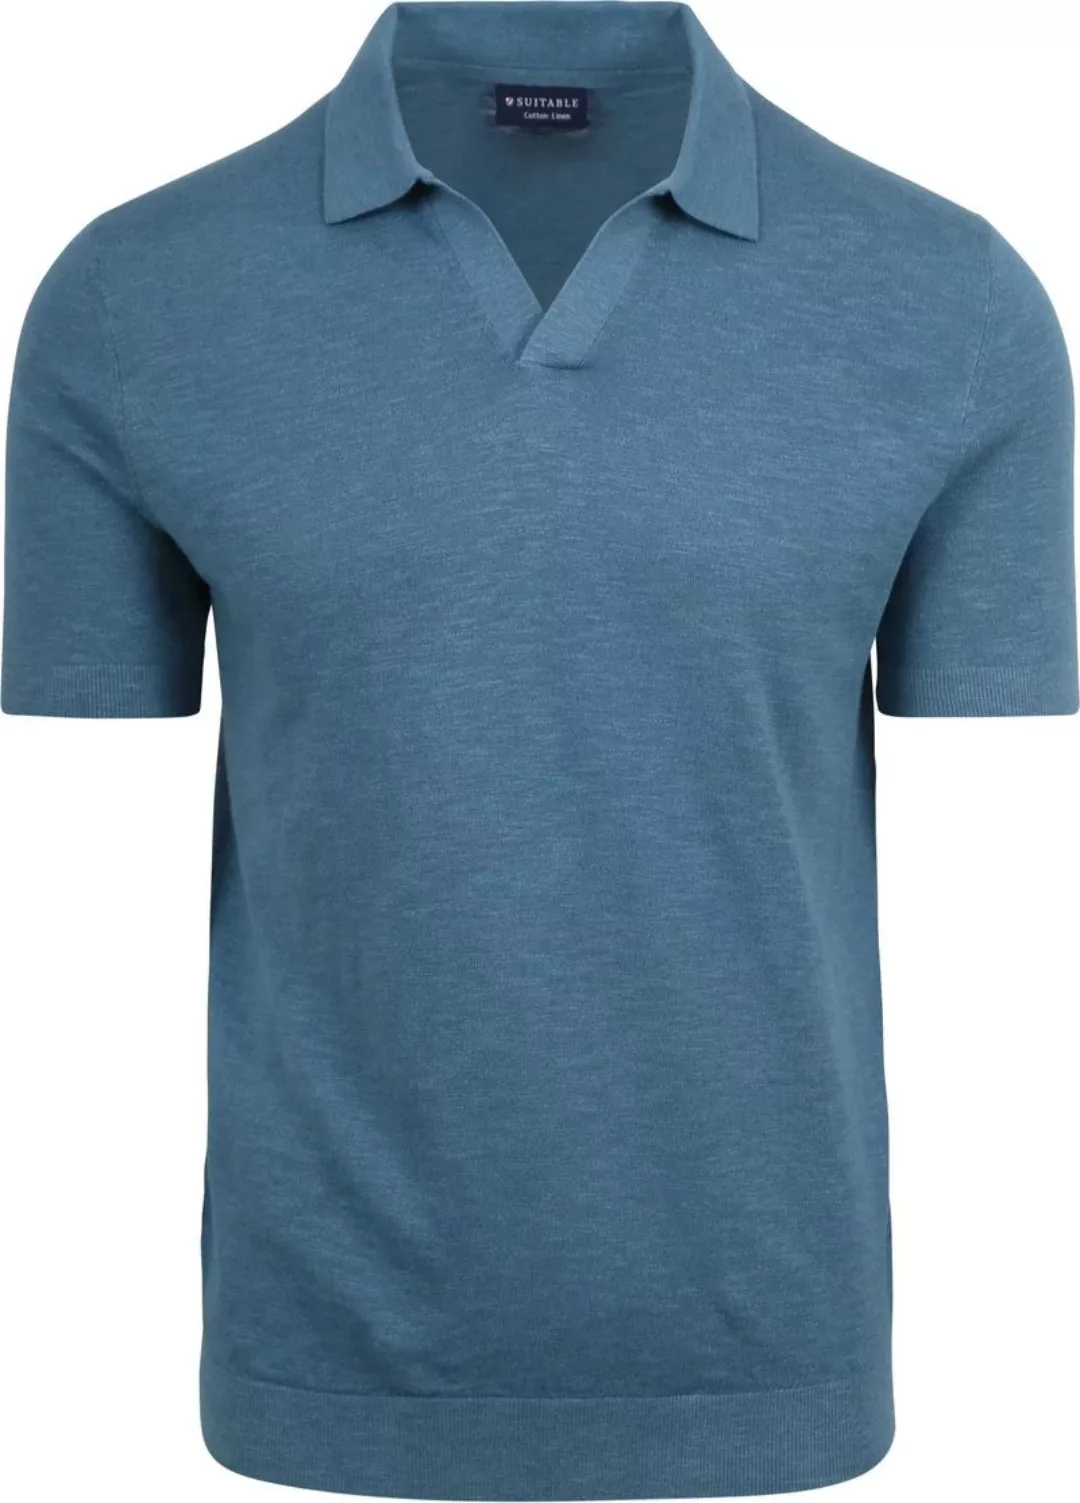 Suitable Poloshirt Riva Leinen Blau - Größe M günstig online kaufen